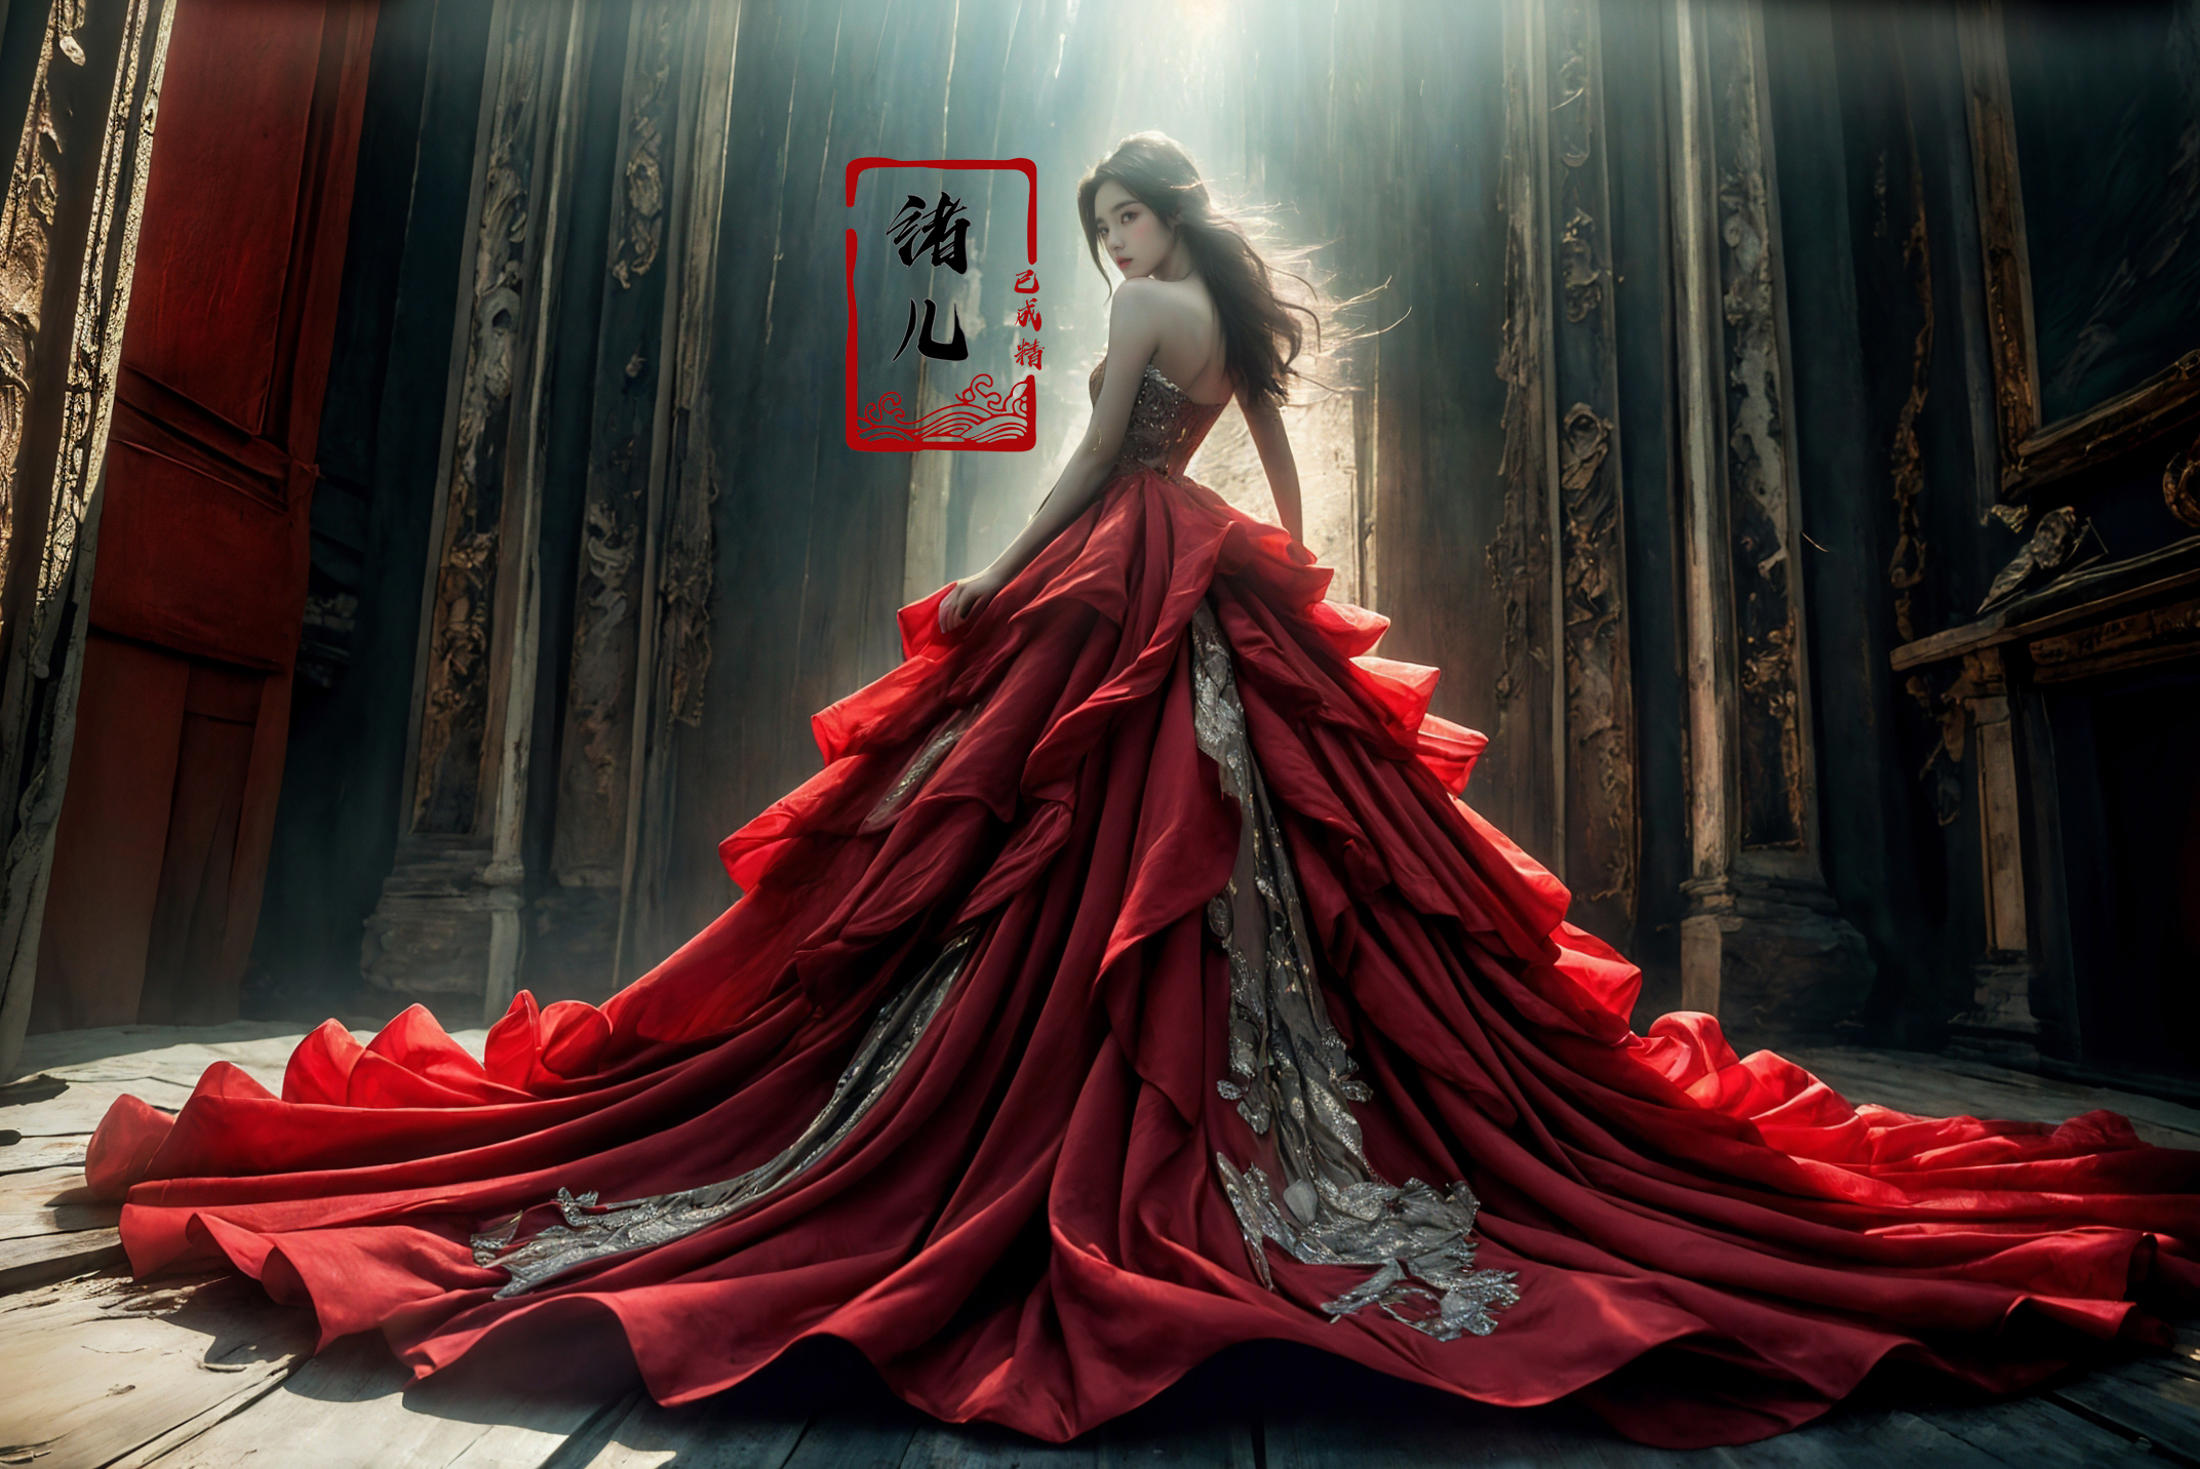 绪儿-高定礼服 xuer extravagant gown image by XRYCJ